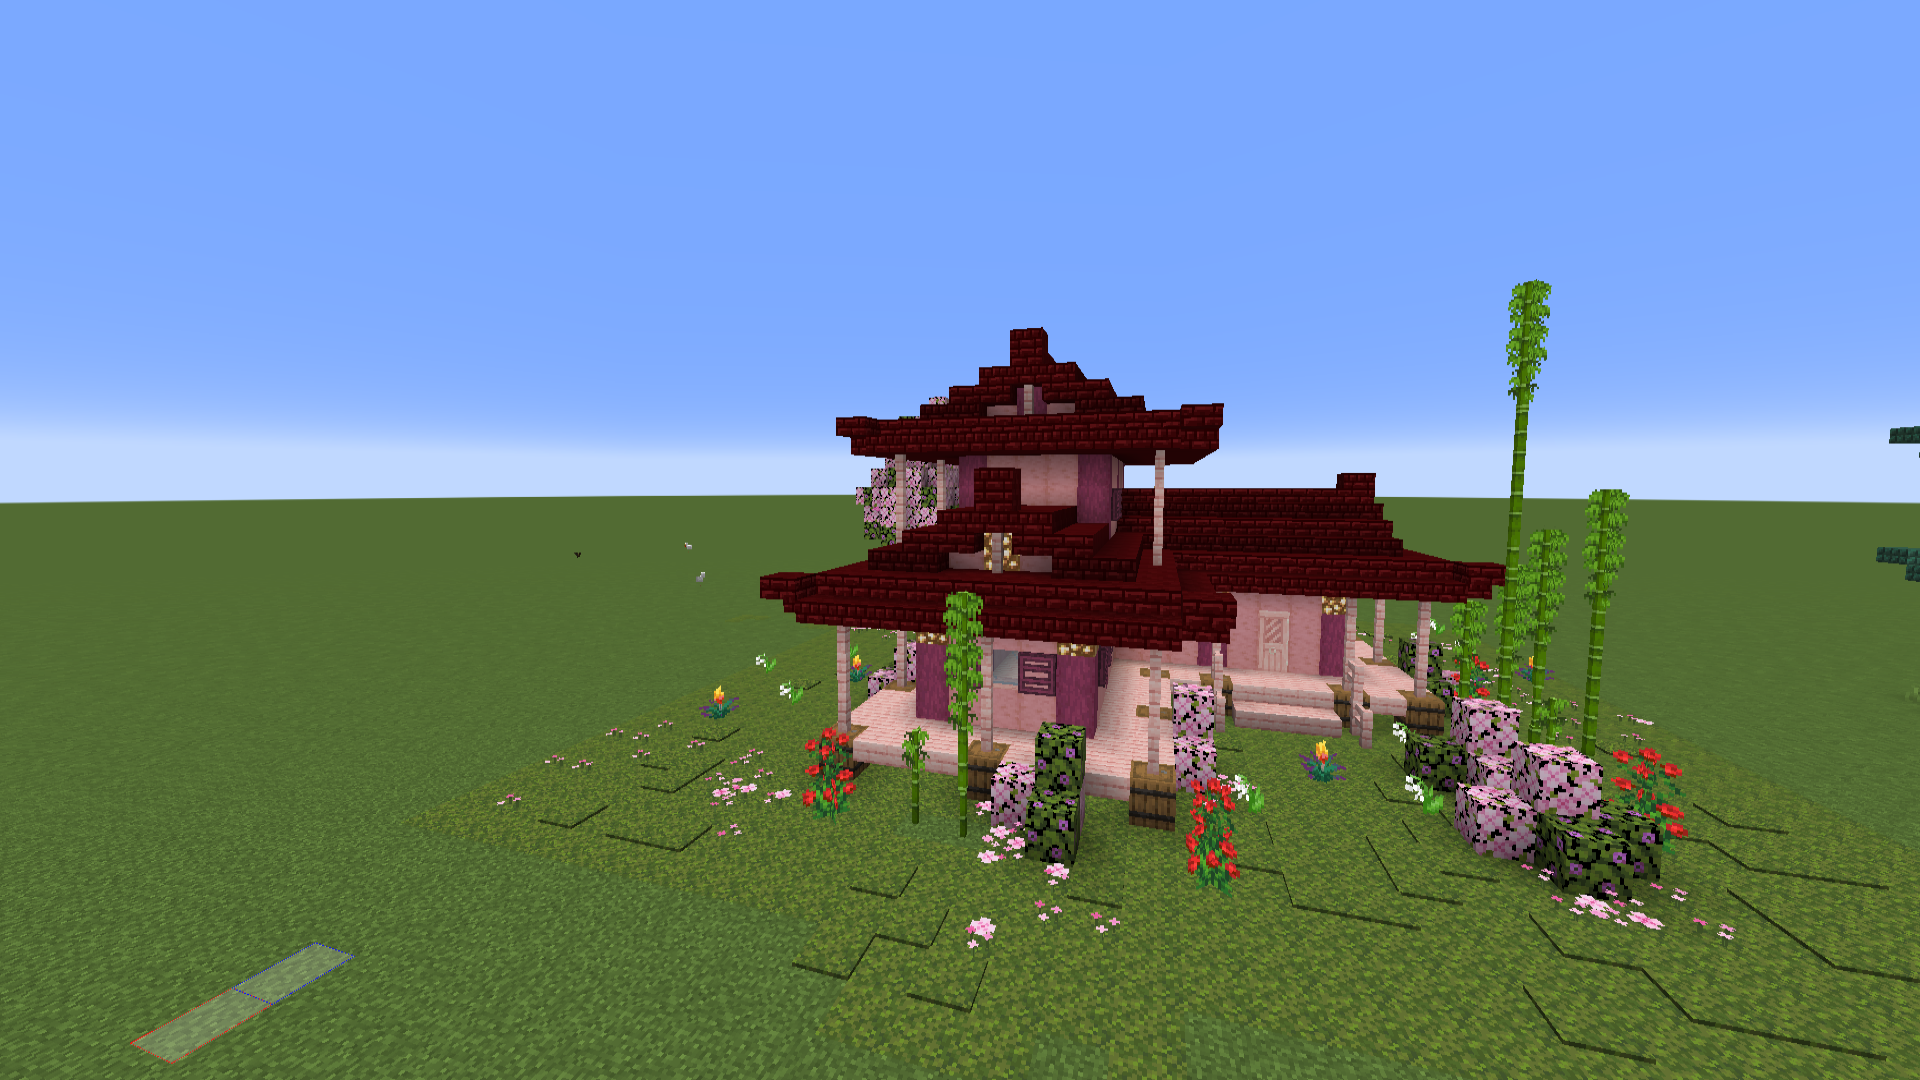 Minecract maison asiatique avec arbre de cerisier/asian house with cherry tree schematic (litematic)